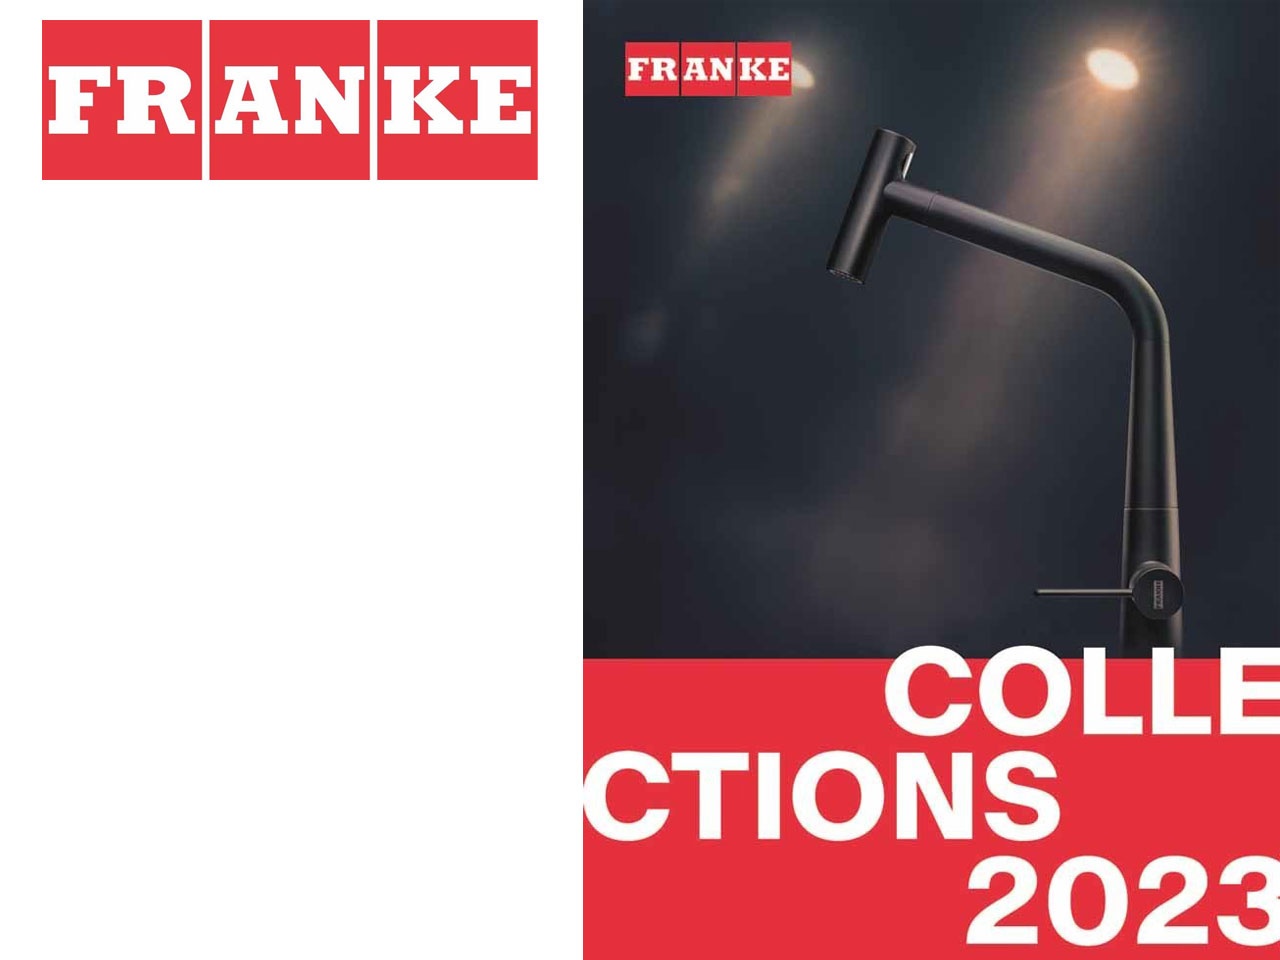 « Franke transforme le changement en opportunités pour une vie meilleure » : la promesse de la nouvelle identité de marque du leader des solutions pour la cuisine !